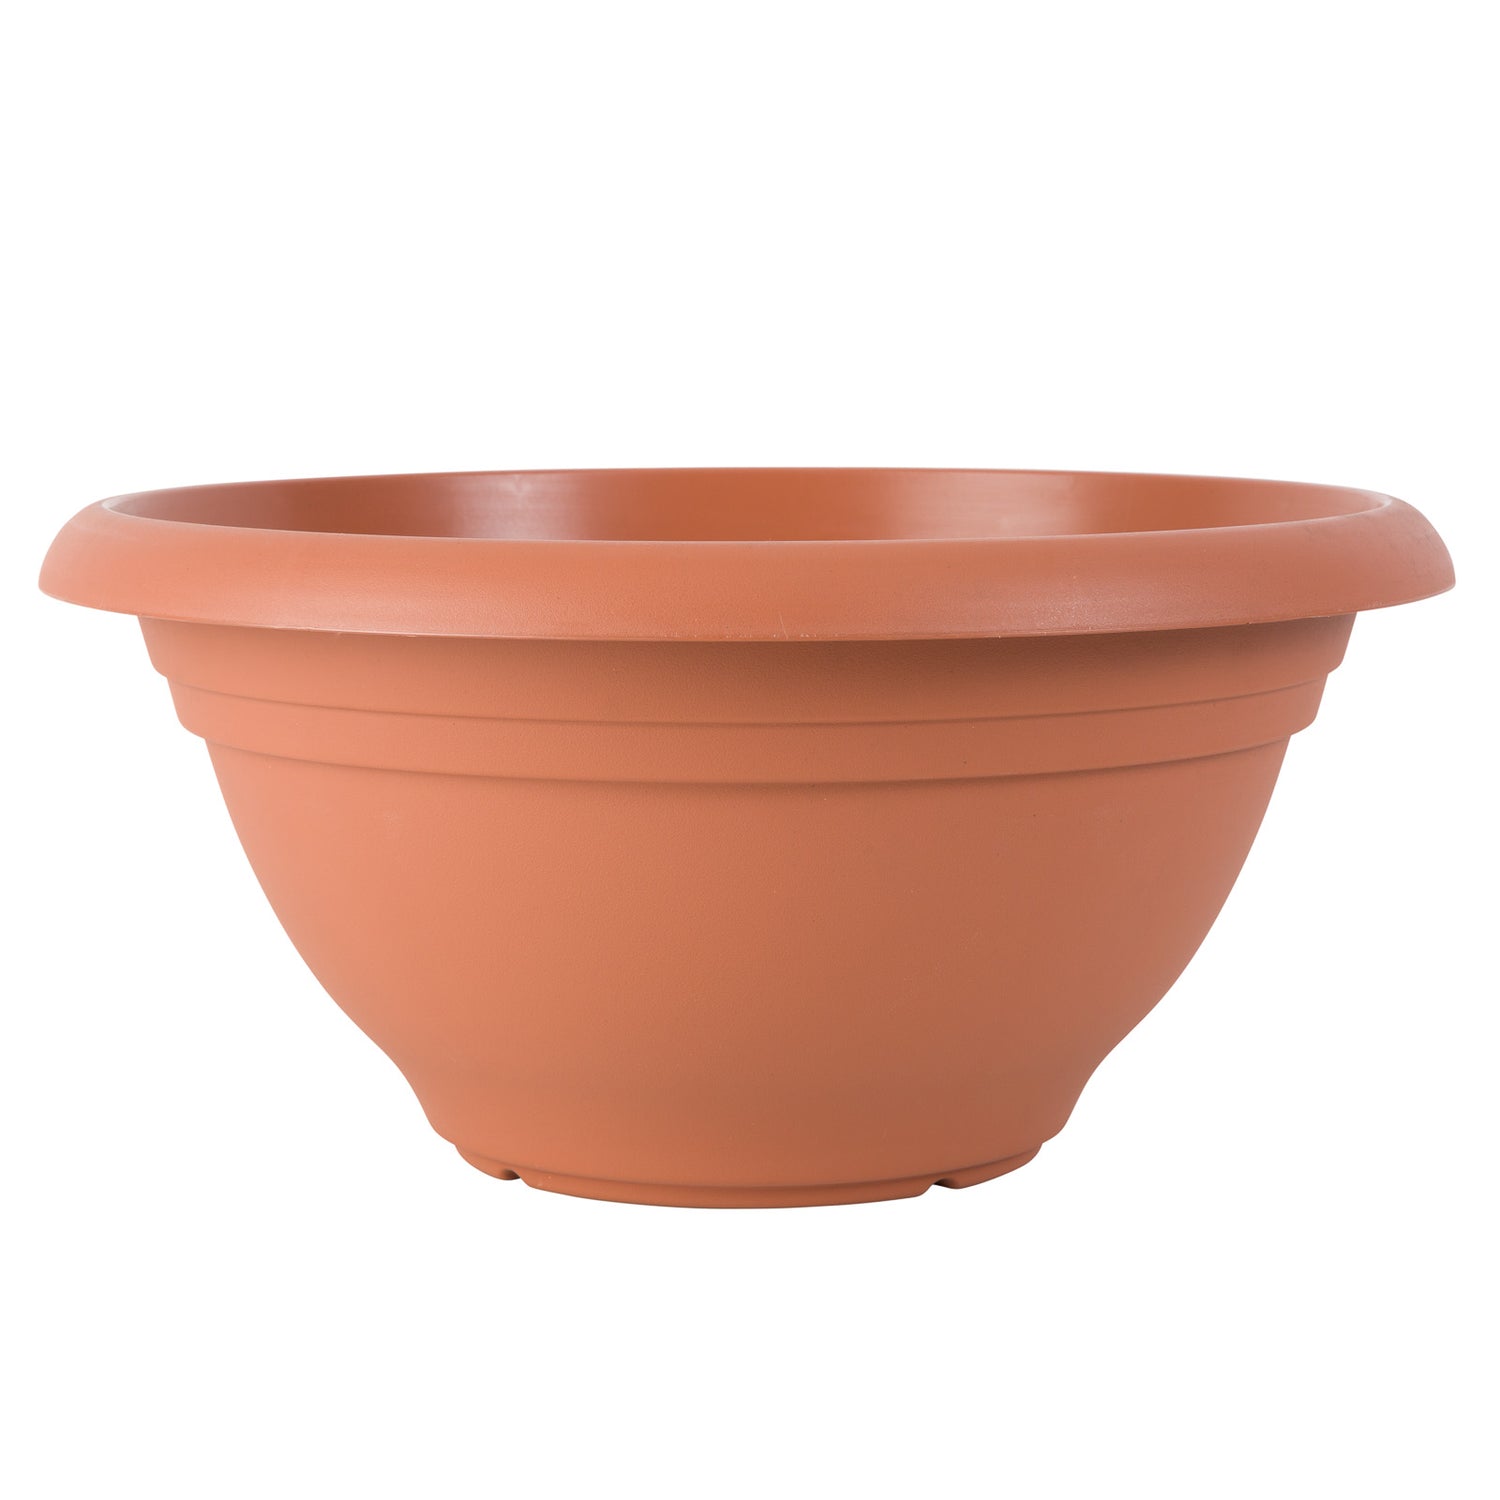 Villa Bowl Pot